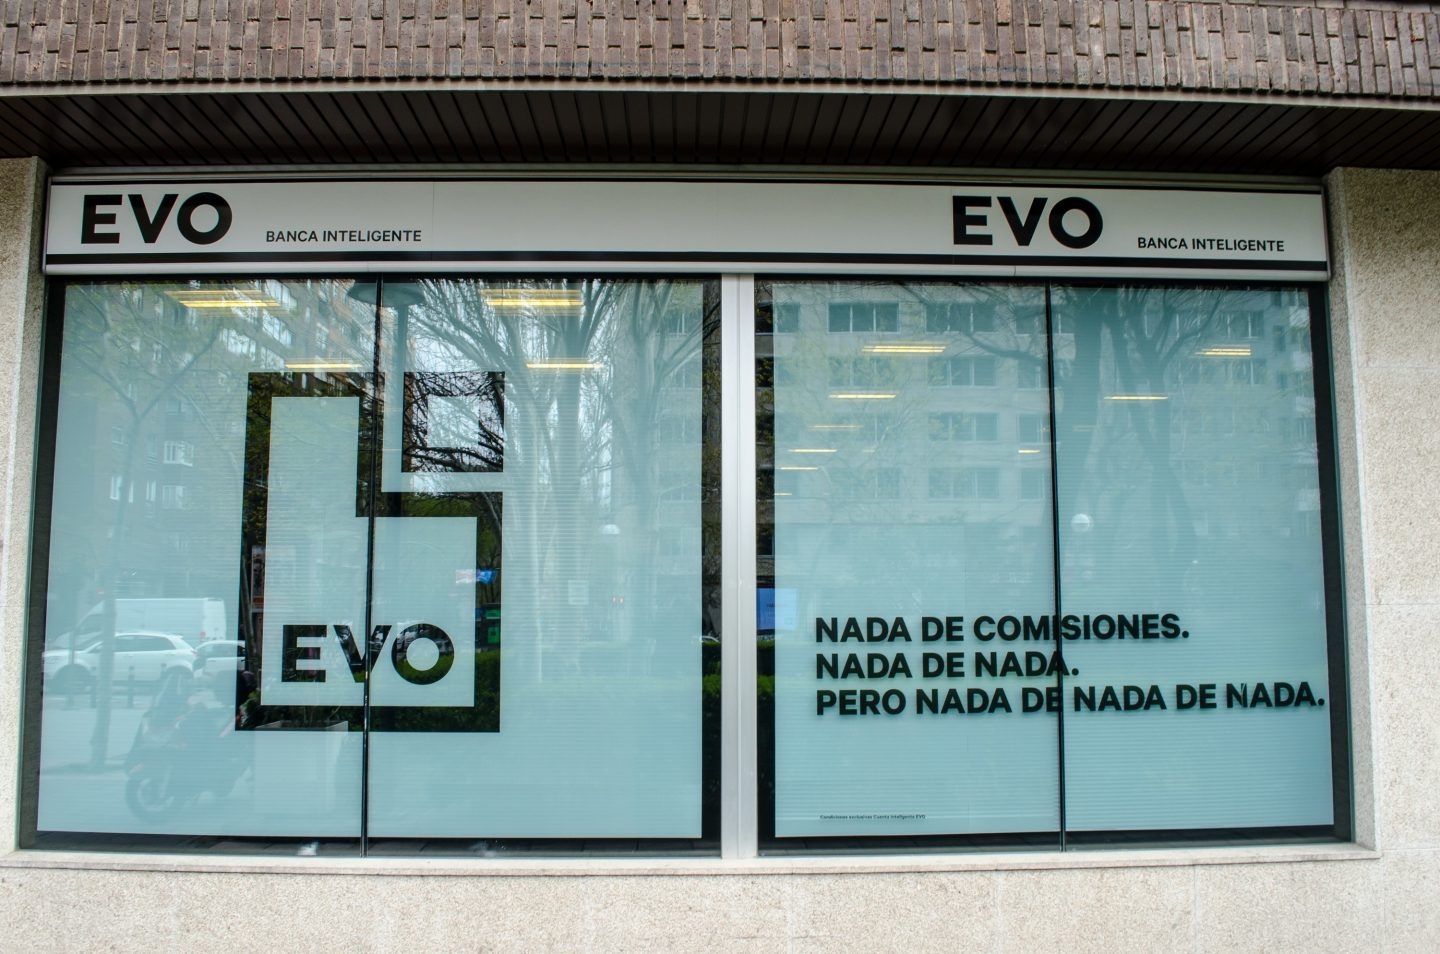 Las nuevas comisiones de las tarjetas de Evo Banco generan malestar entre sus clientes.